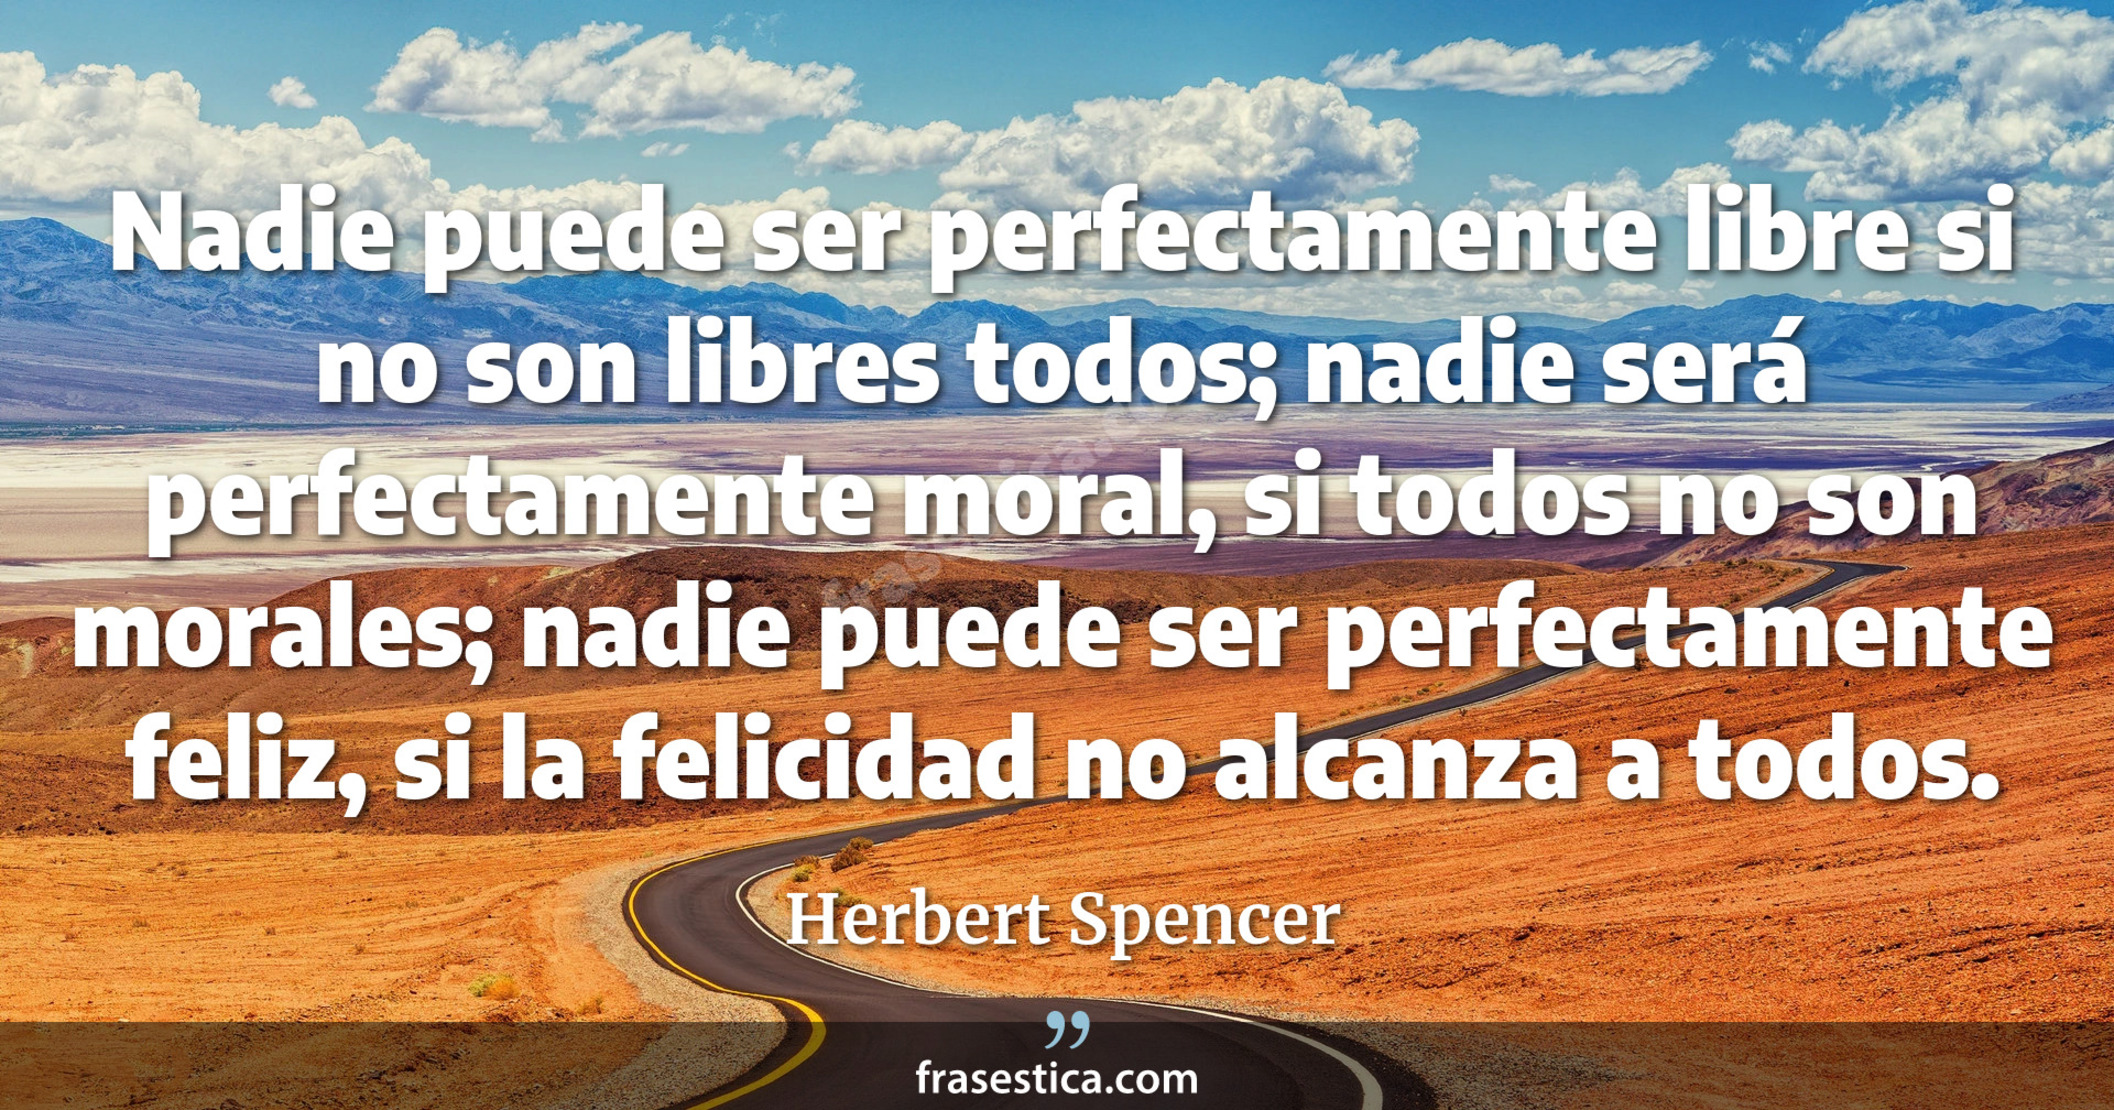 Nadie puede ser perfectamente libre si no son libres todos; nadie será perfectamente moral, si todos no son morales; nadie puede ser perfectamente feliz, si la felicidad no alcanza a todos. - Herbert Spencer